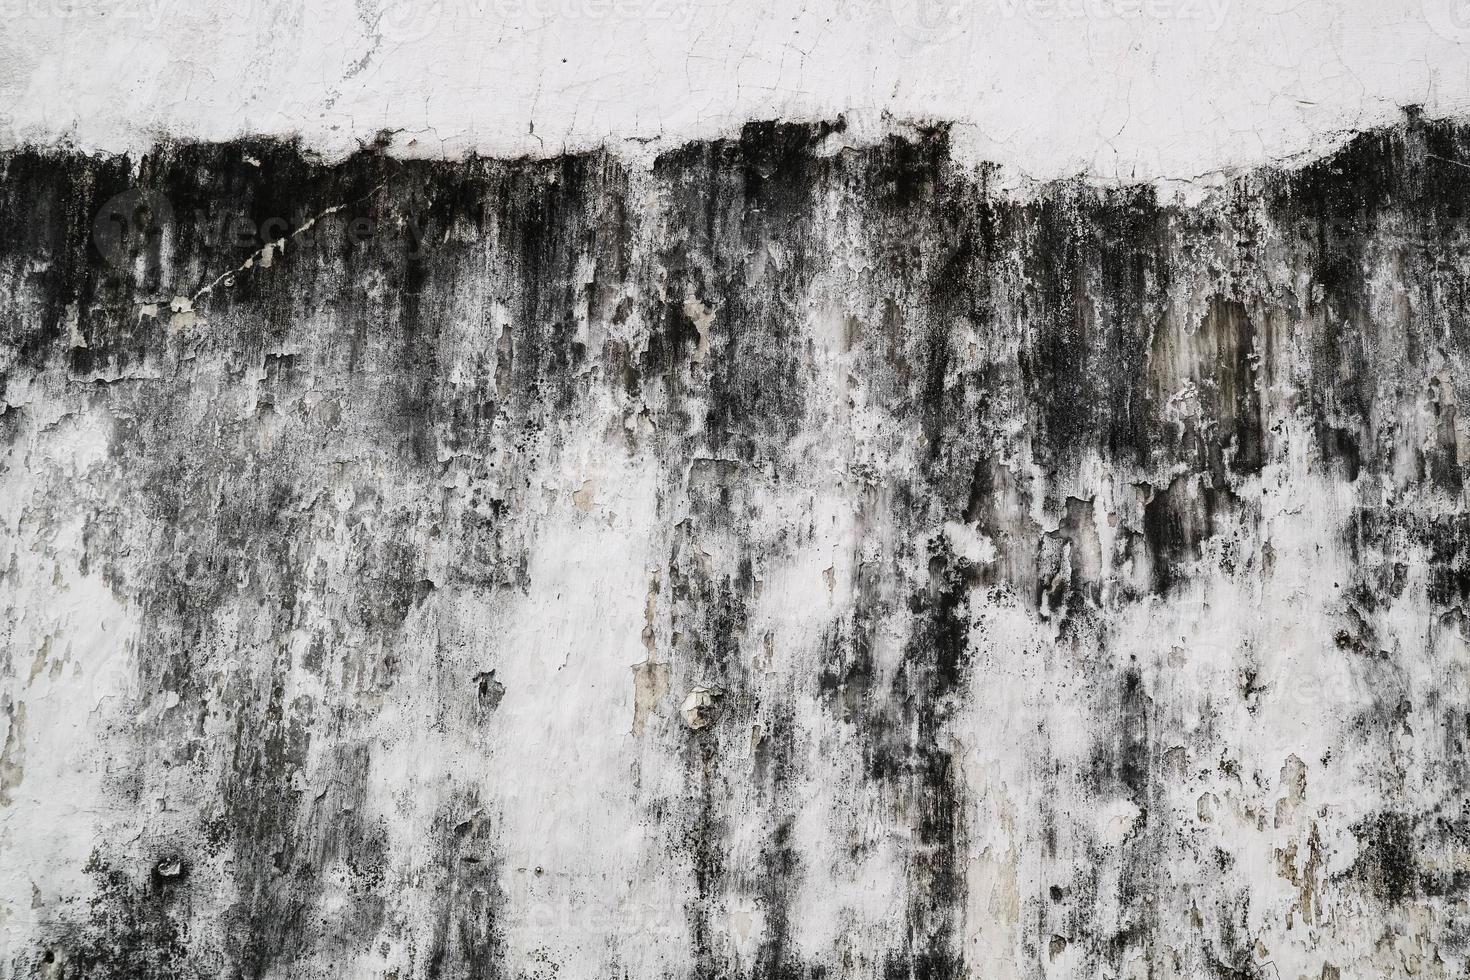 grunge vecchio muro di cemento grezzo texture. fondo concreto di lerciume astratto per il modello. foto